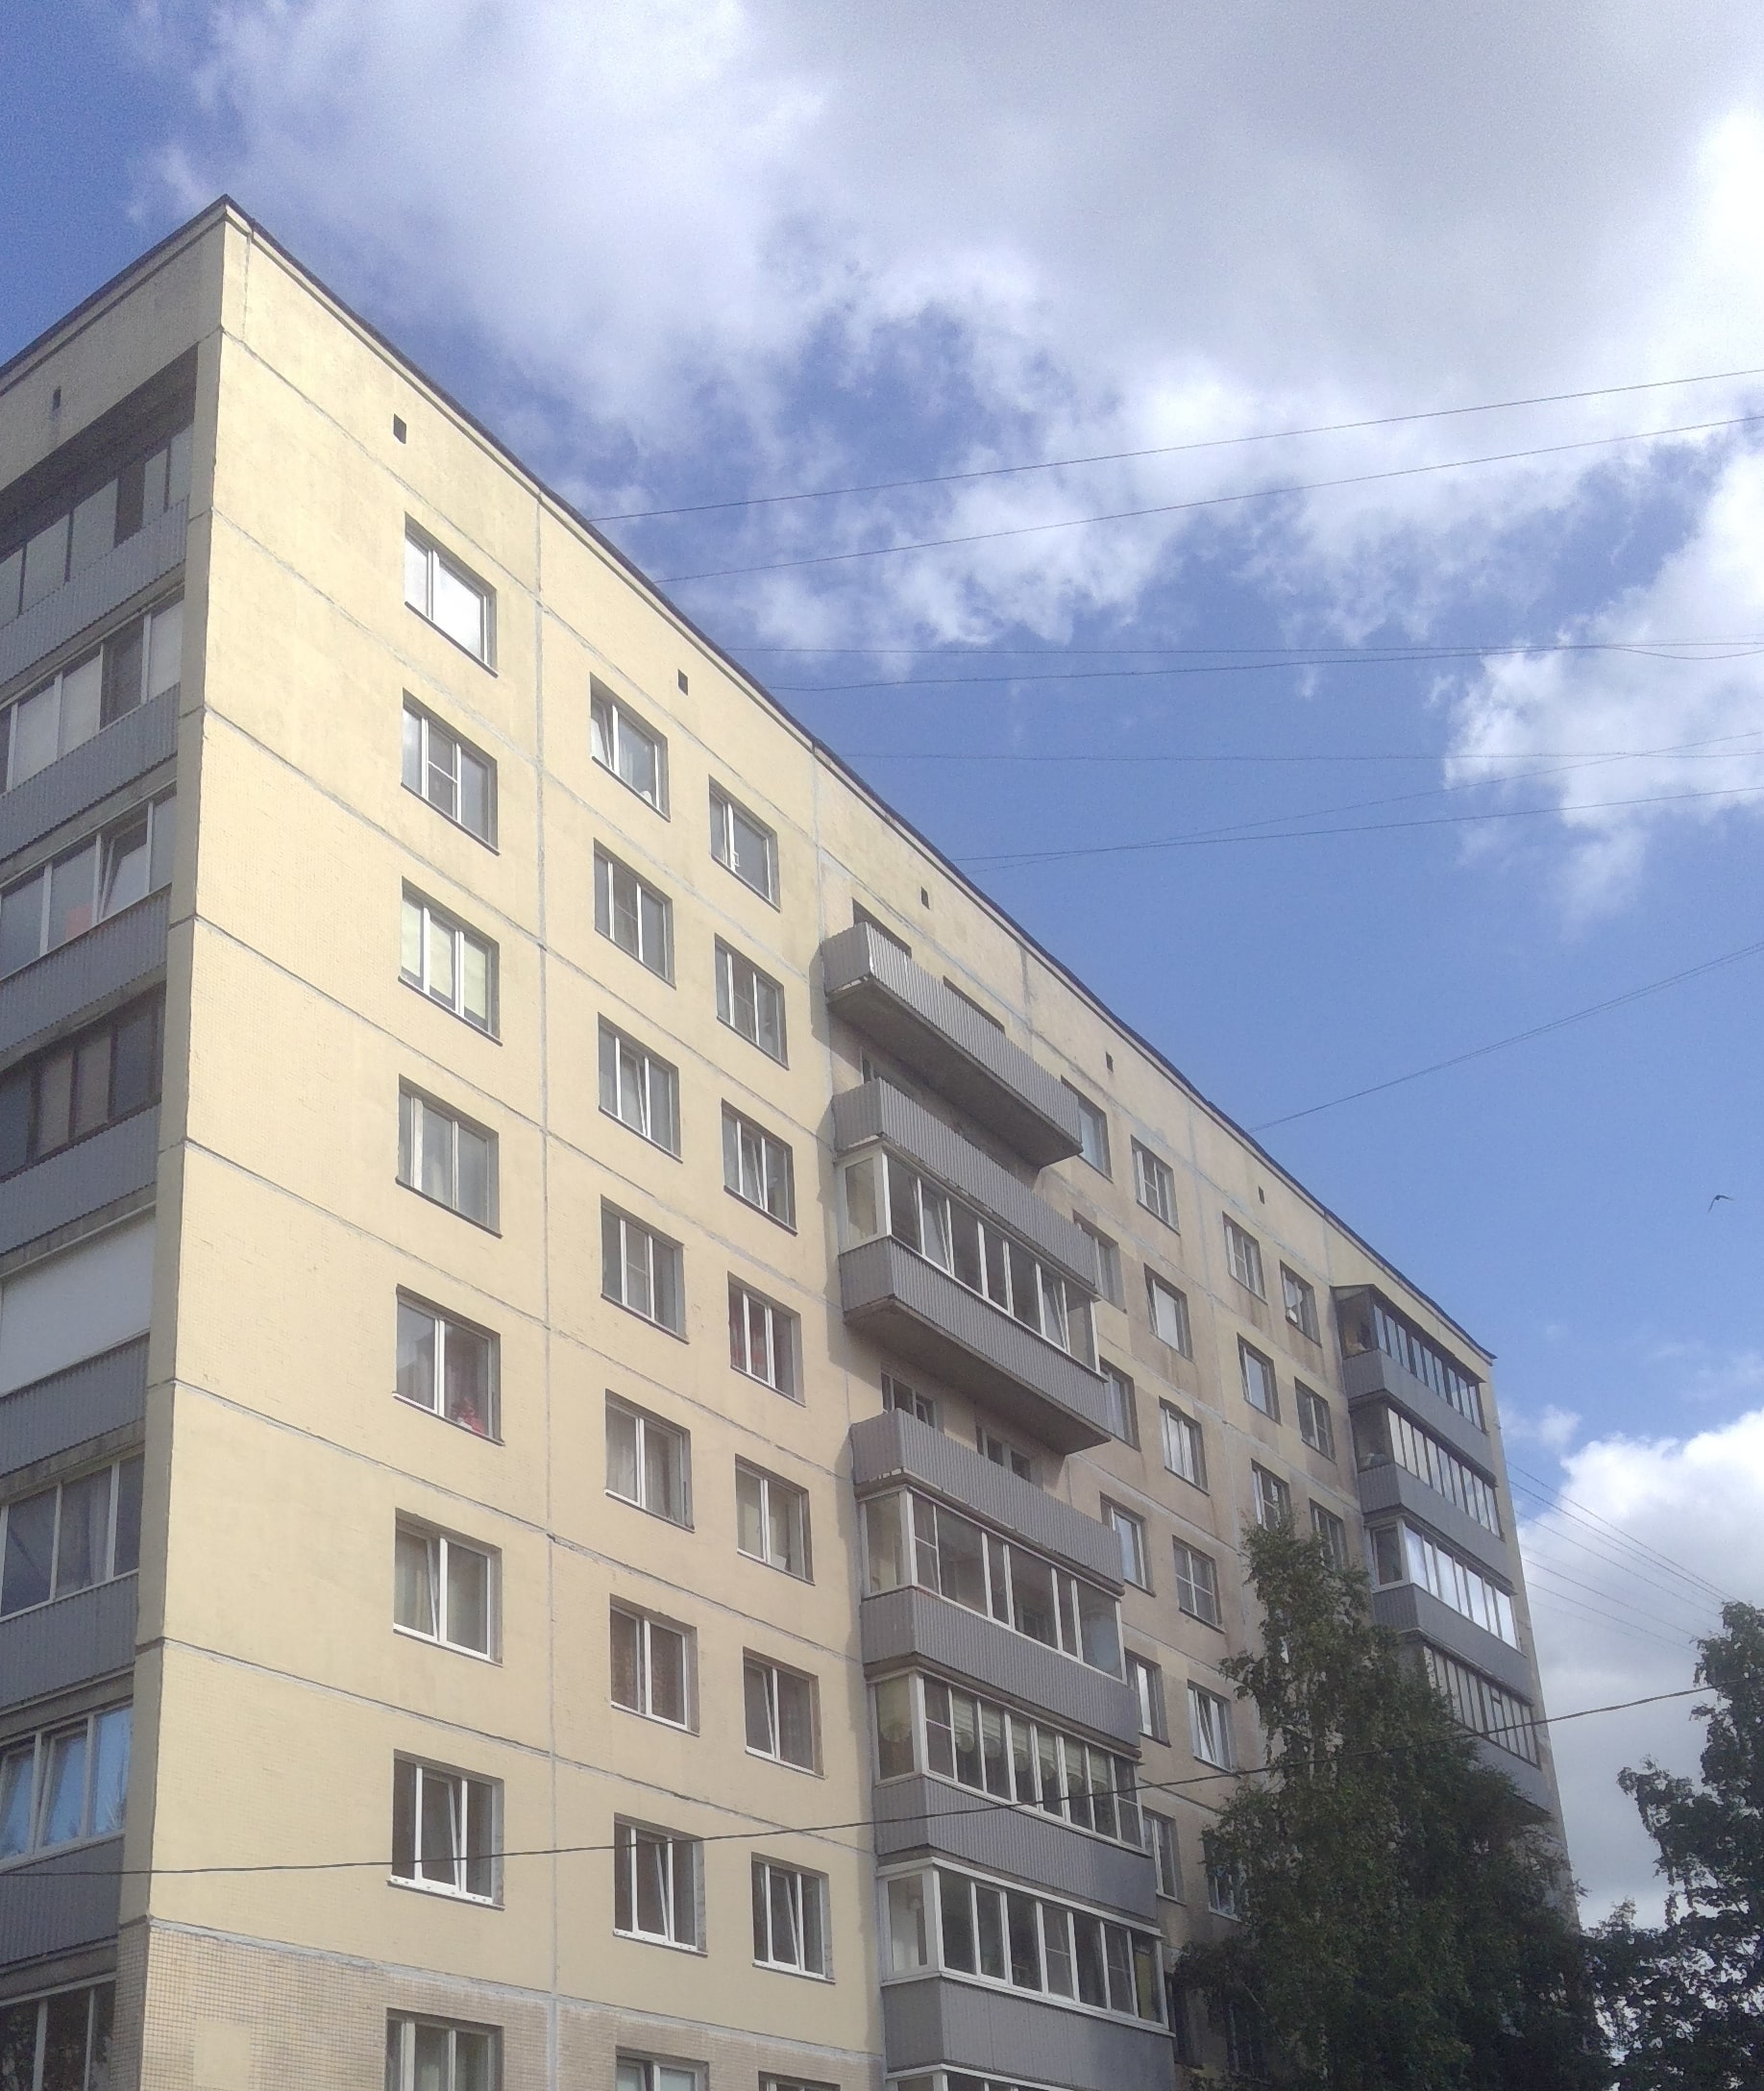 Ремонт фасада ул. Ивана фомина д. 13 корп. 1 (2 пар. фасад слева)